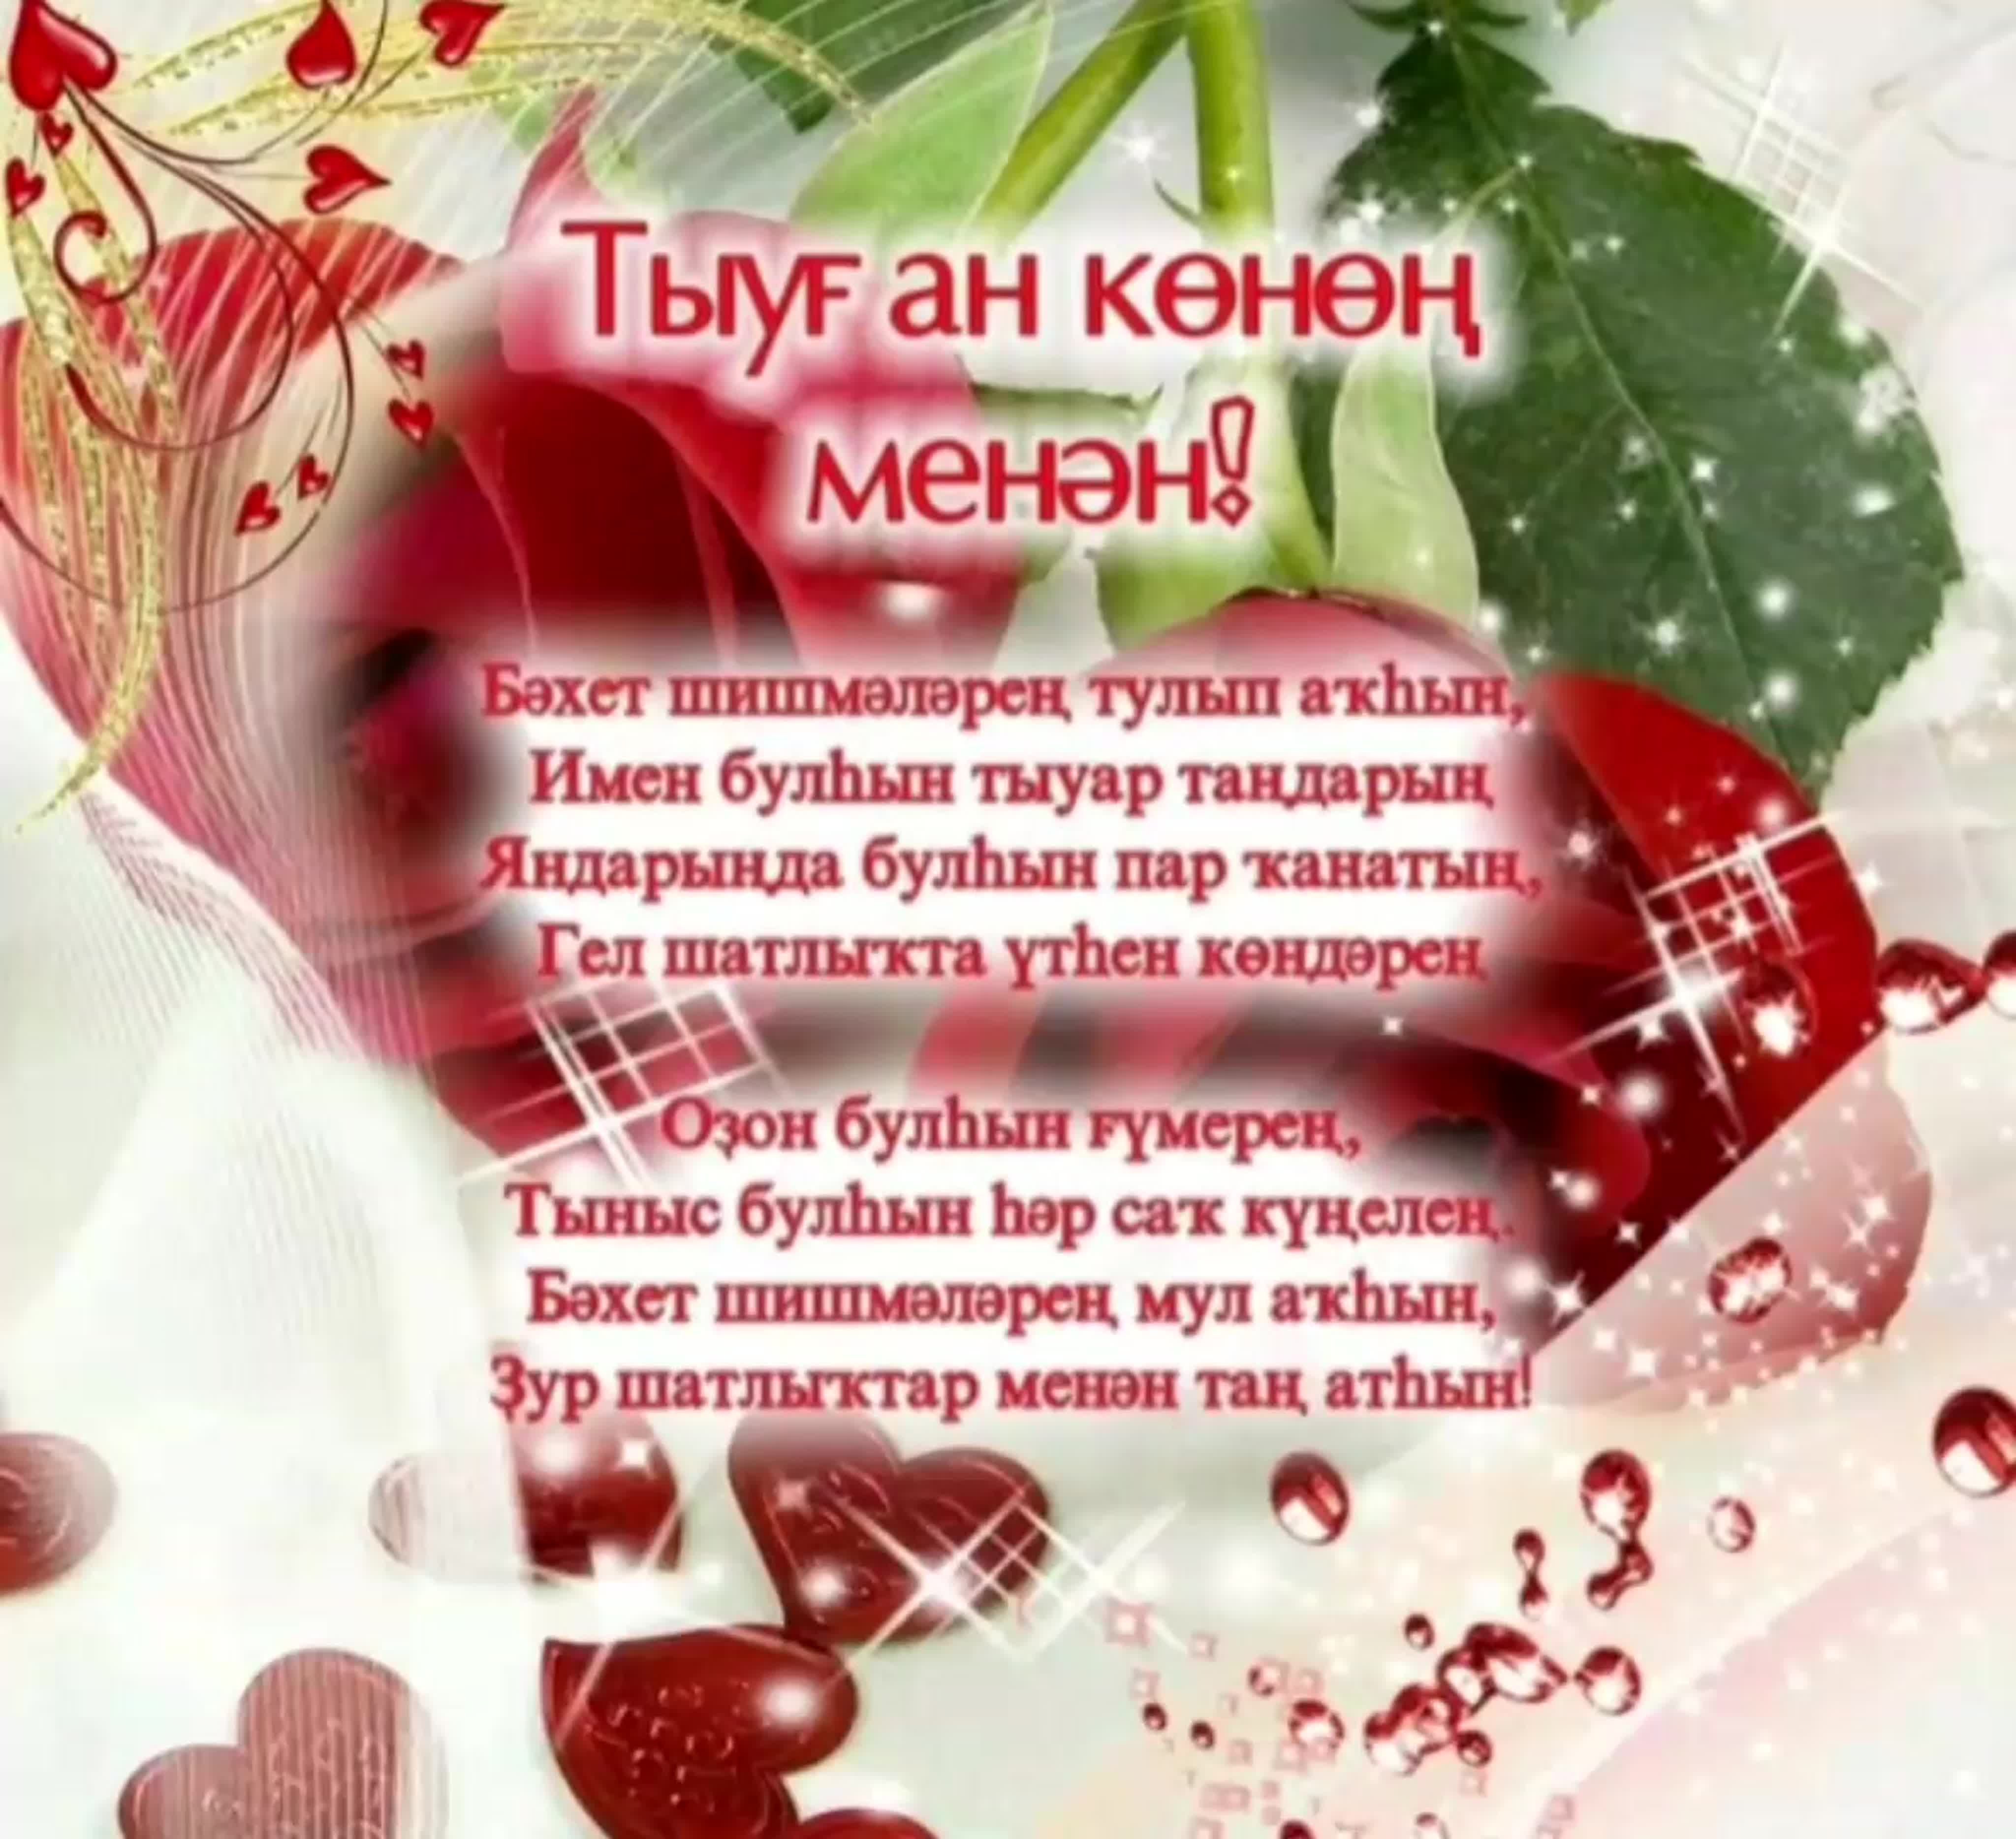 Поздравление с рождением на крымскотатарском языке. Открытка с юбилеем на башкирском языке. Поздравления с днём рождения на башкирском языке. Поздравление с юбилеем на башкирском языке. Поздравления с днём на башкирском языке.